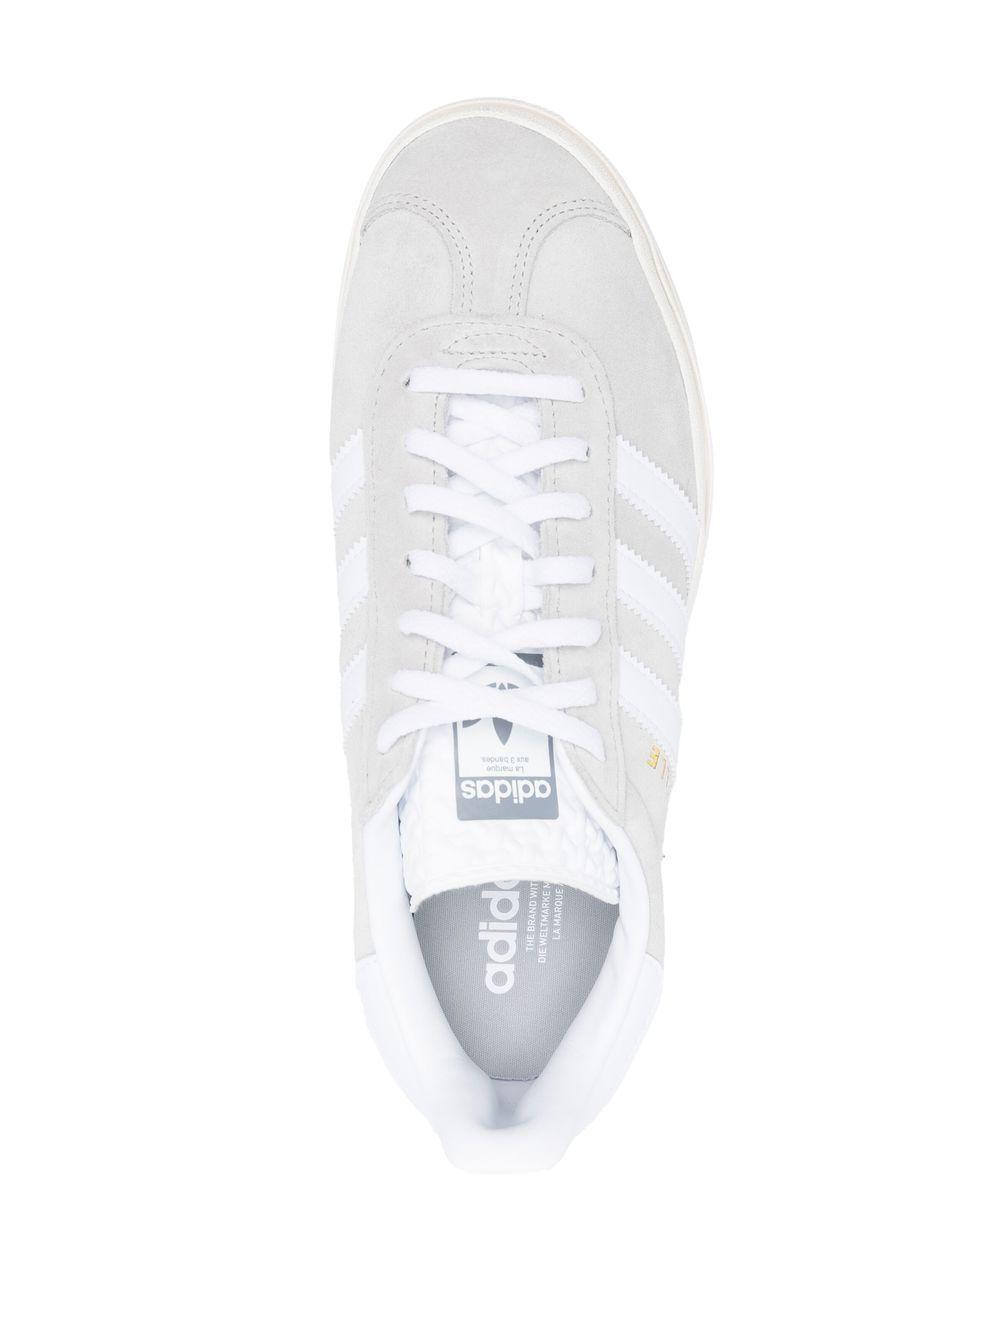 adidas Originals Gazelle Bold in White | Lyst